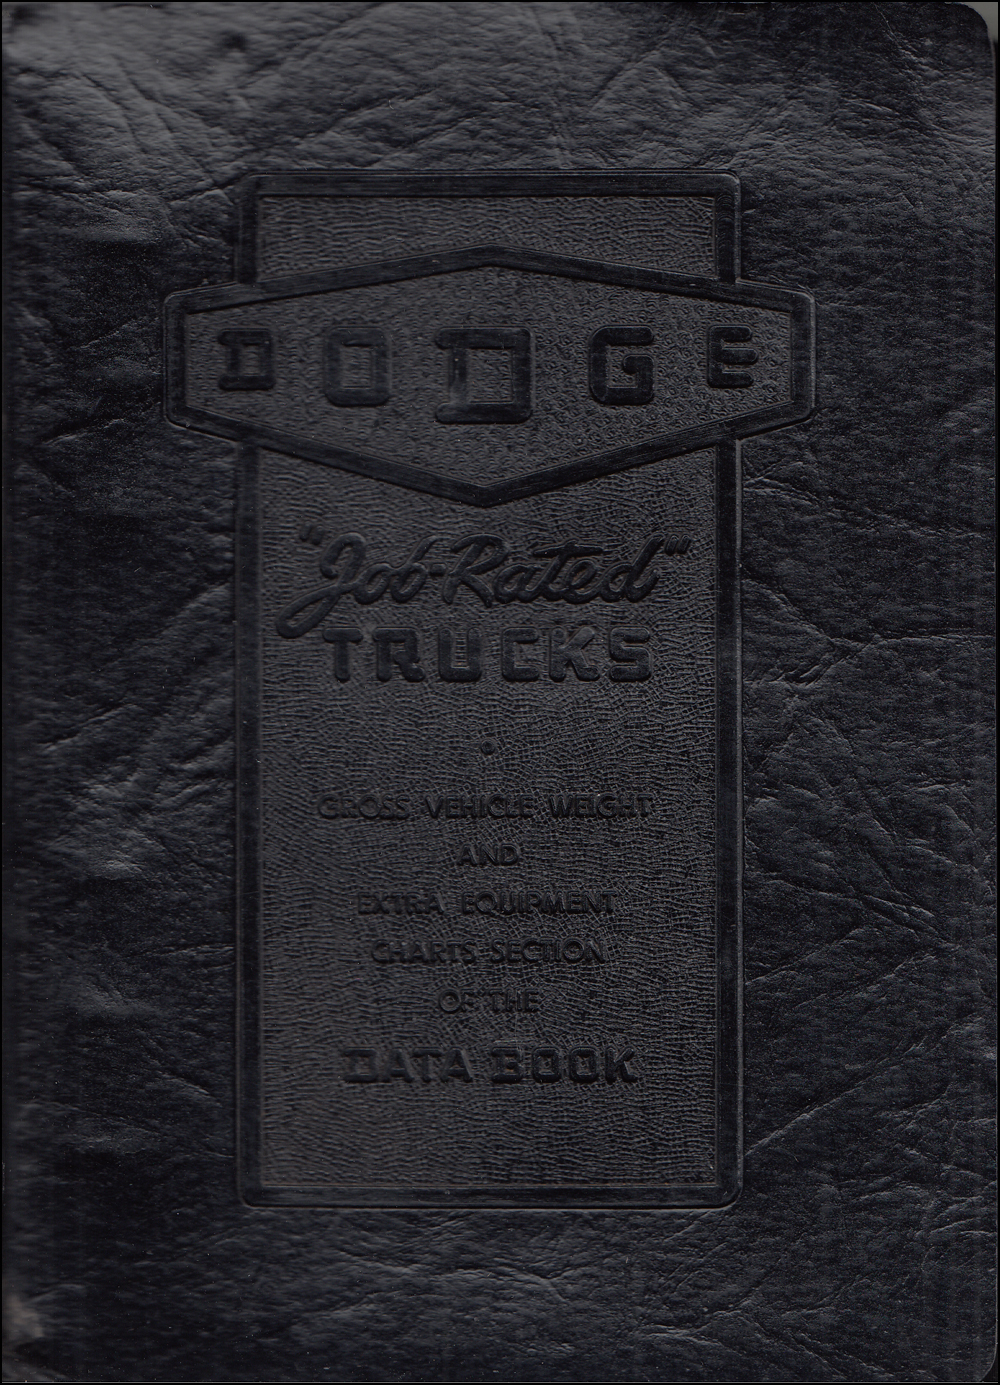 1947 Dodge Truck Data Book Original - printed March '47